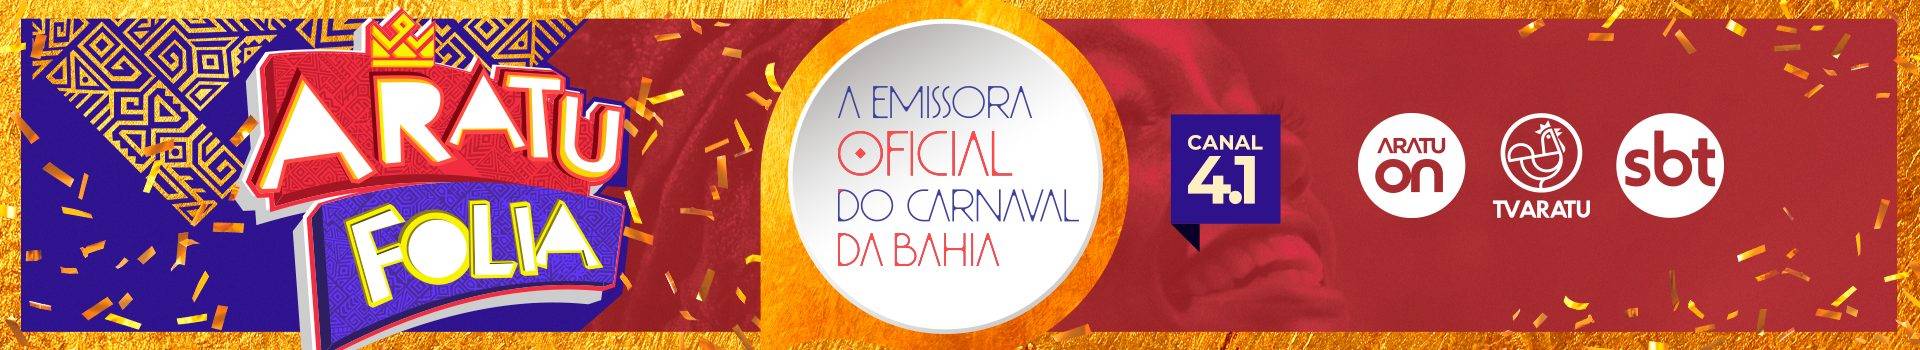 02.02 - BANNERS 1920X350 - Emissora Oficial do Carnaval da Bahia